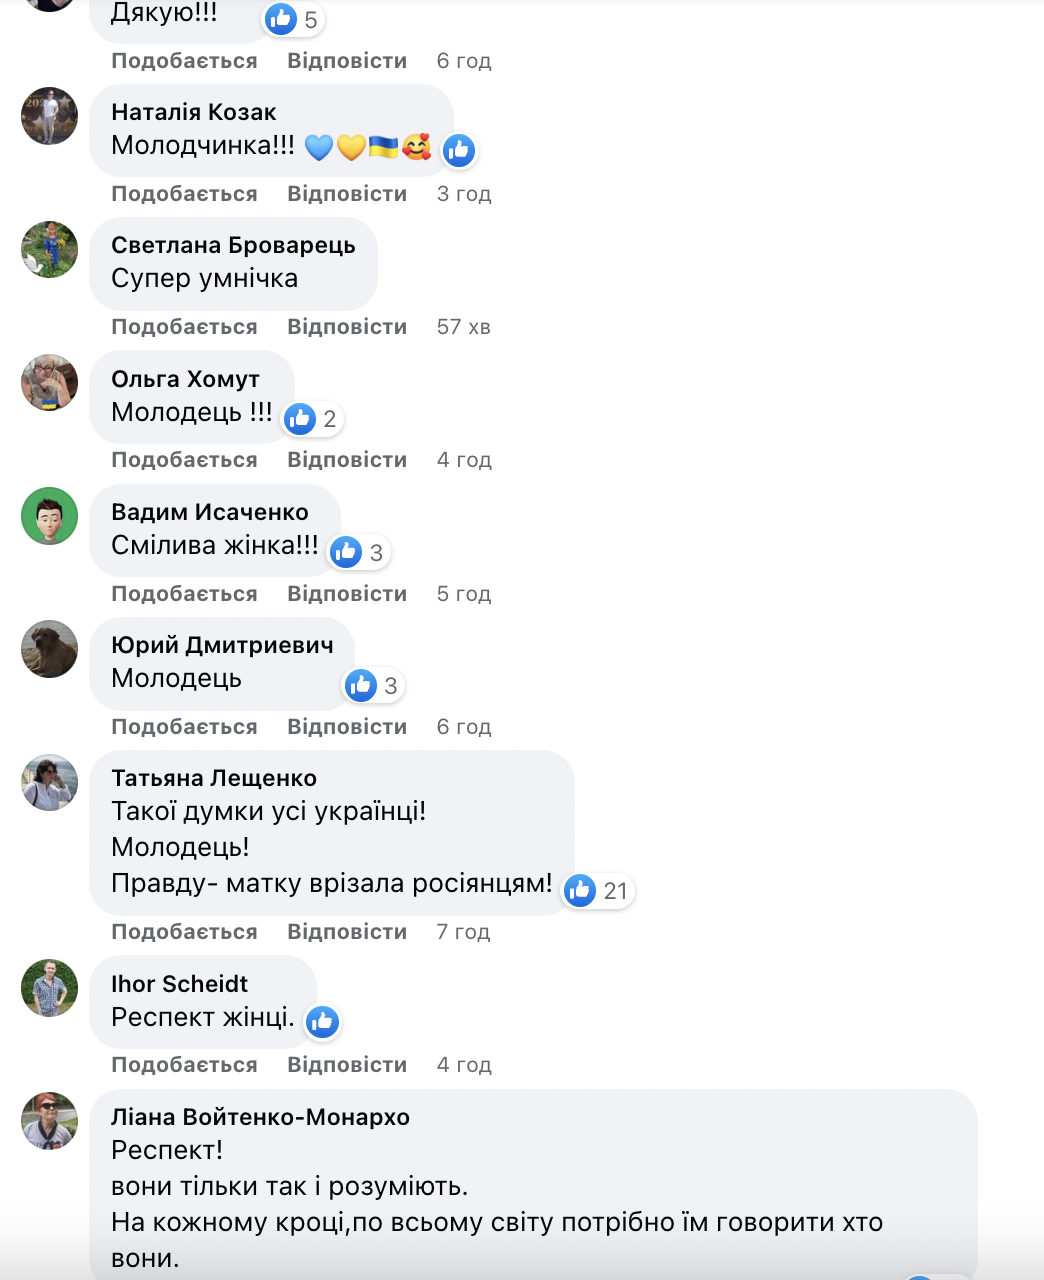 "На собственной шкуре почувствовала всю мерзость Московии": в сети поддержали чеченку, которая "разнесла" россиян в Финляндии. Фото